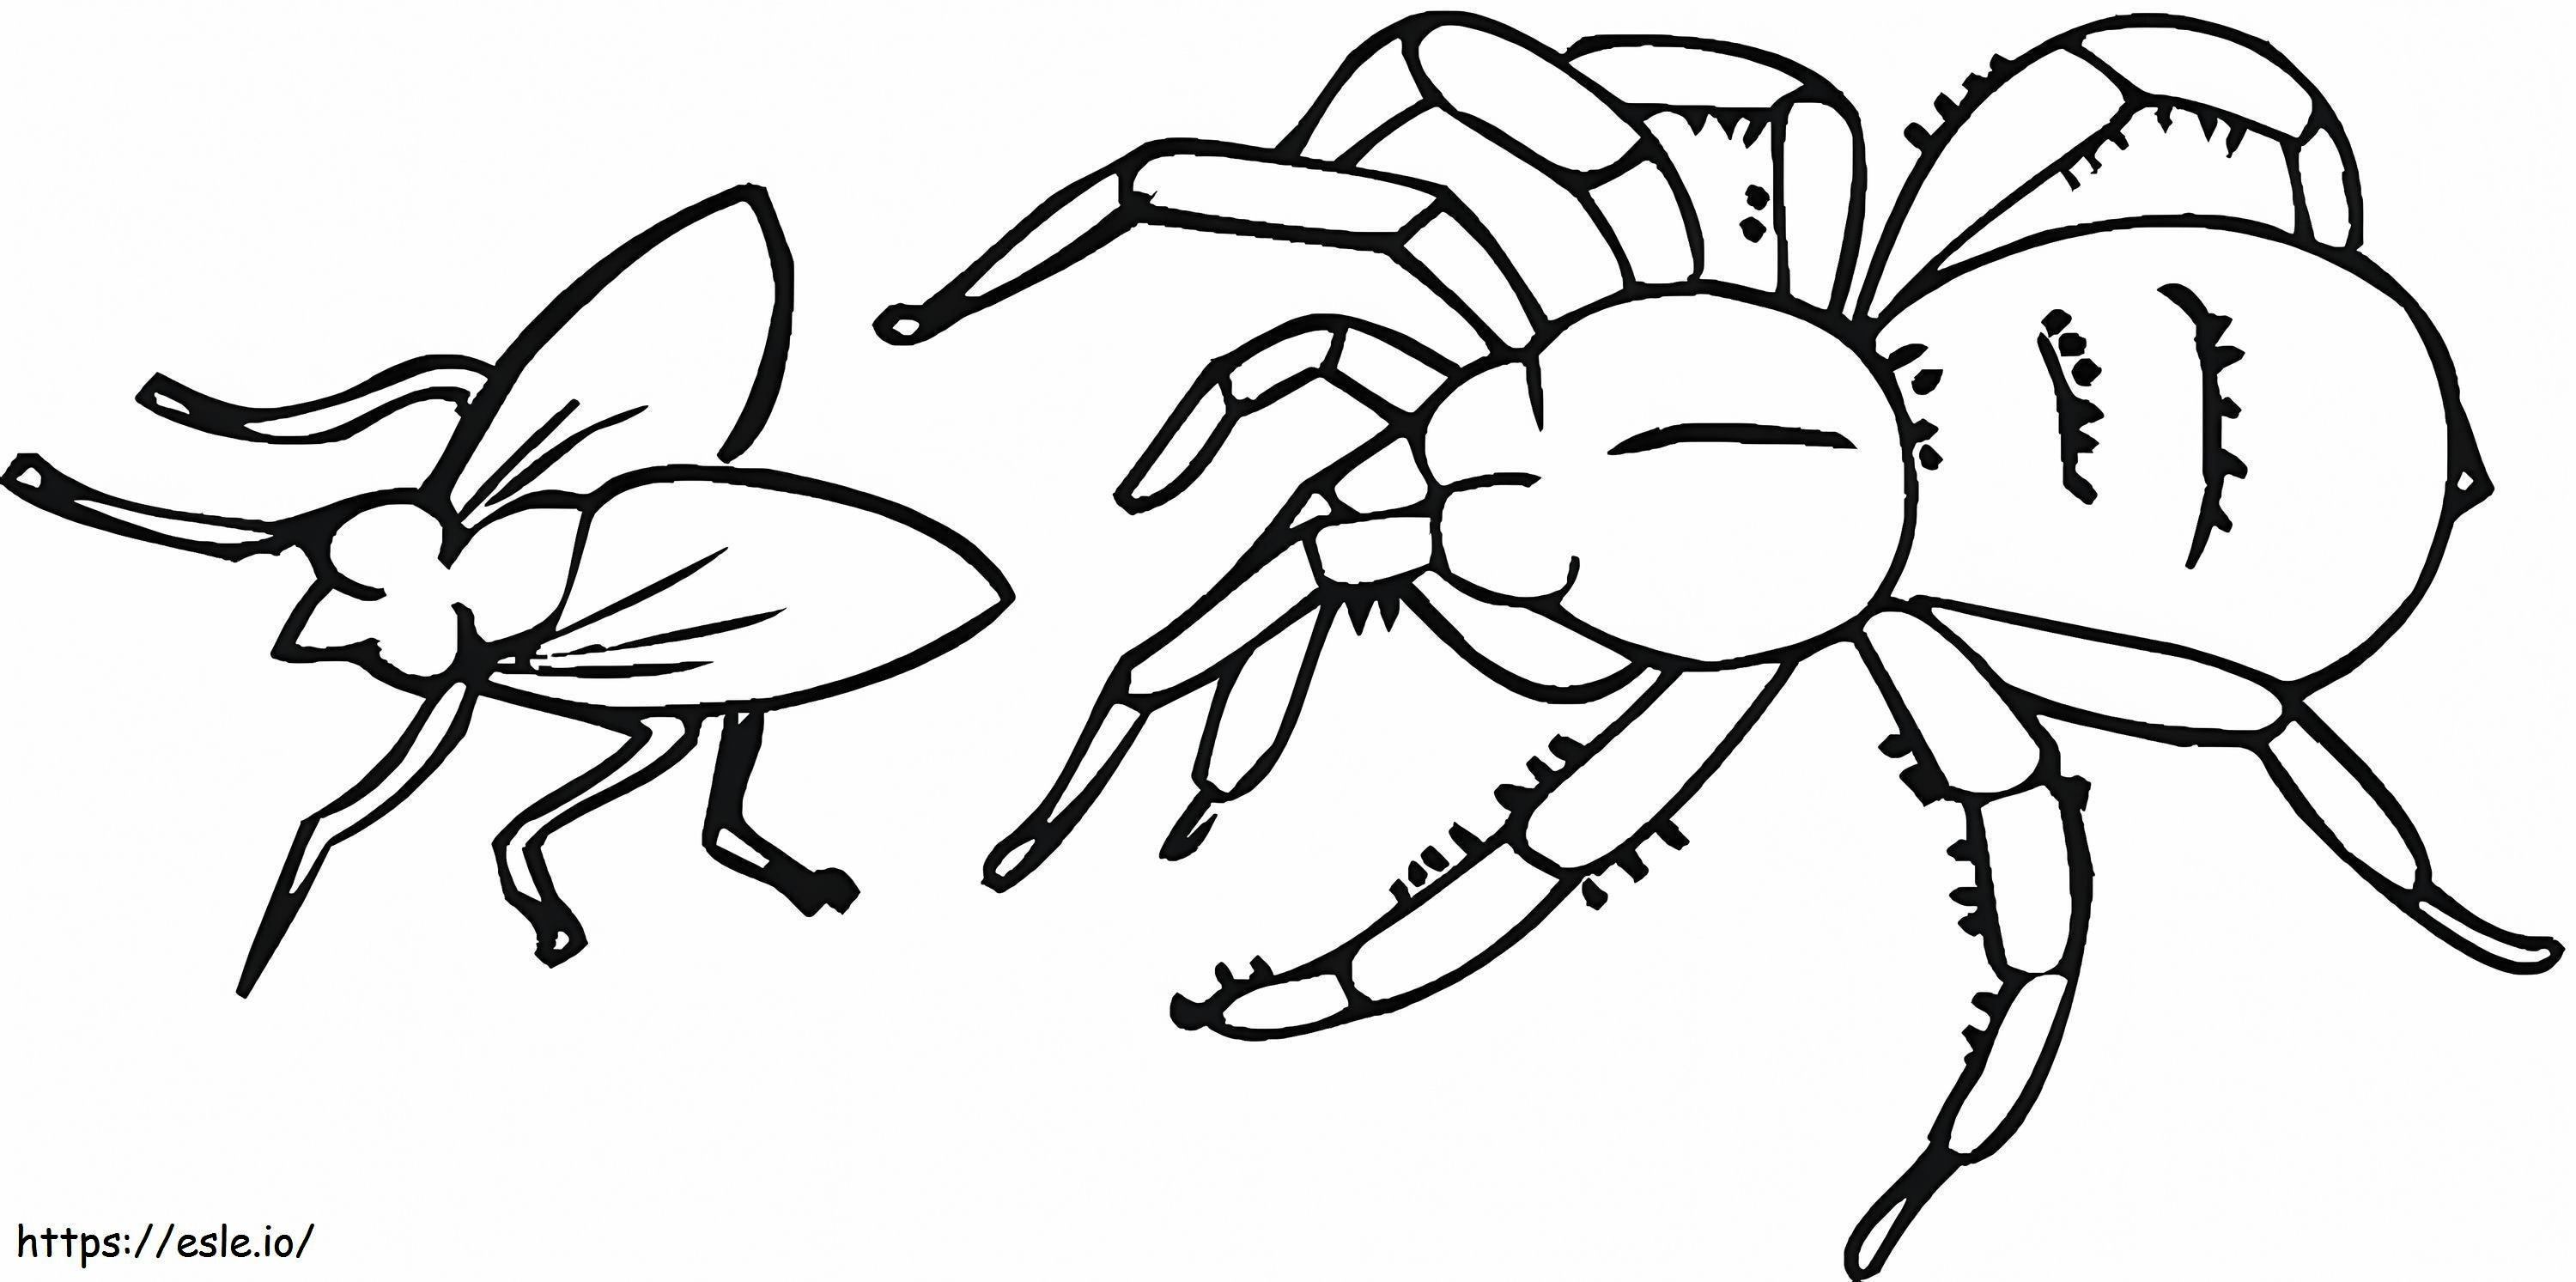 Aranha e mosca para colorir